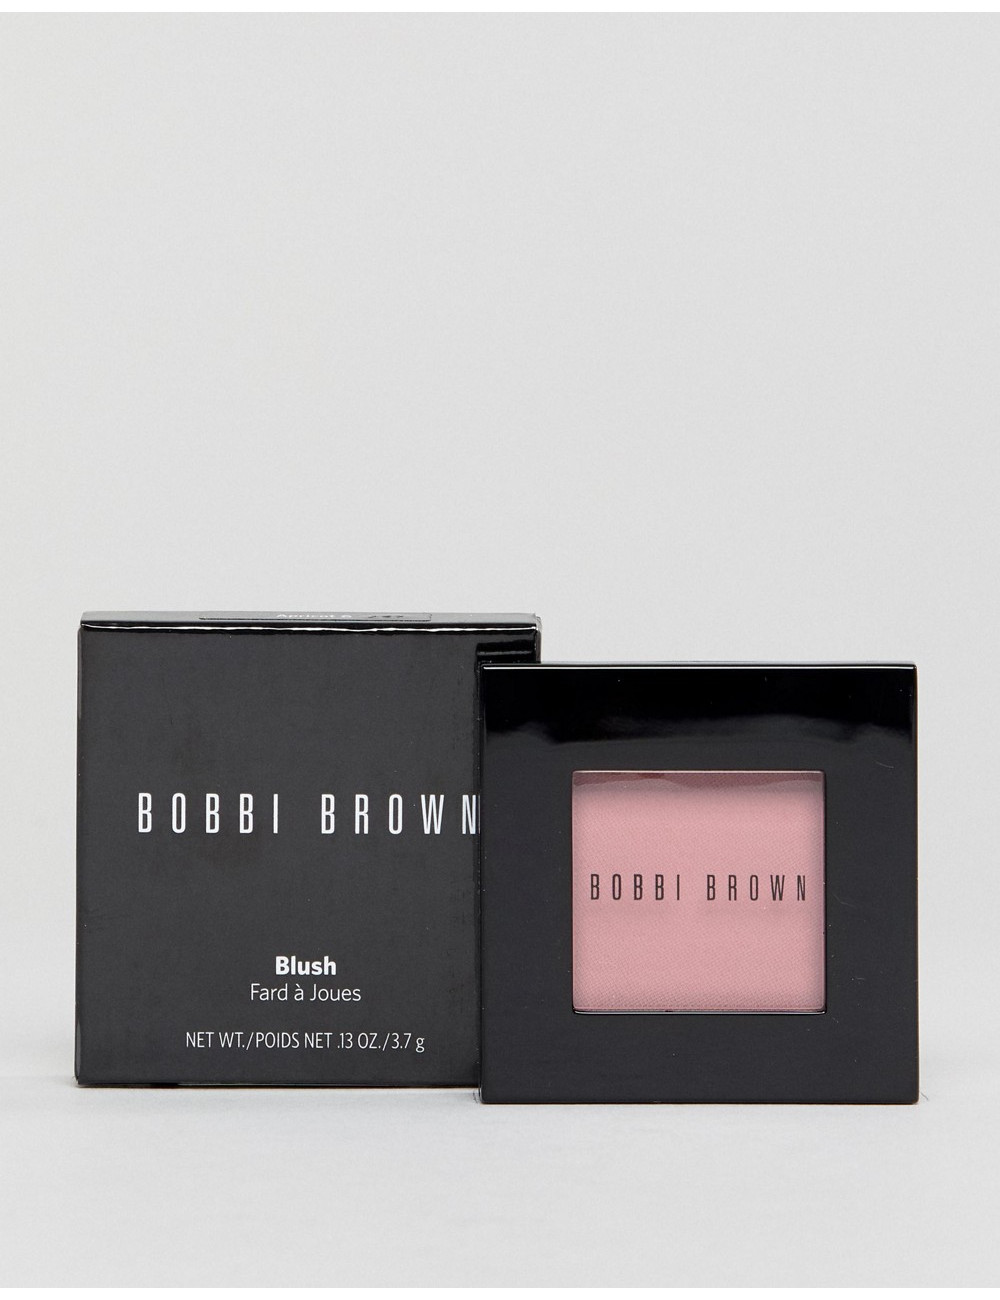 Bobbi Brown Blush Desert Pink